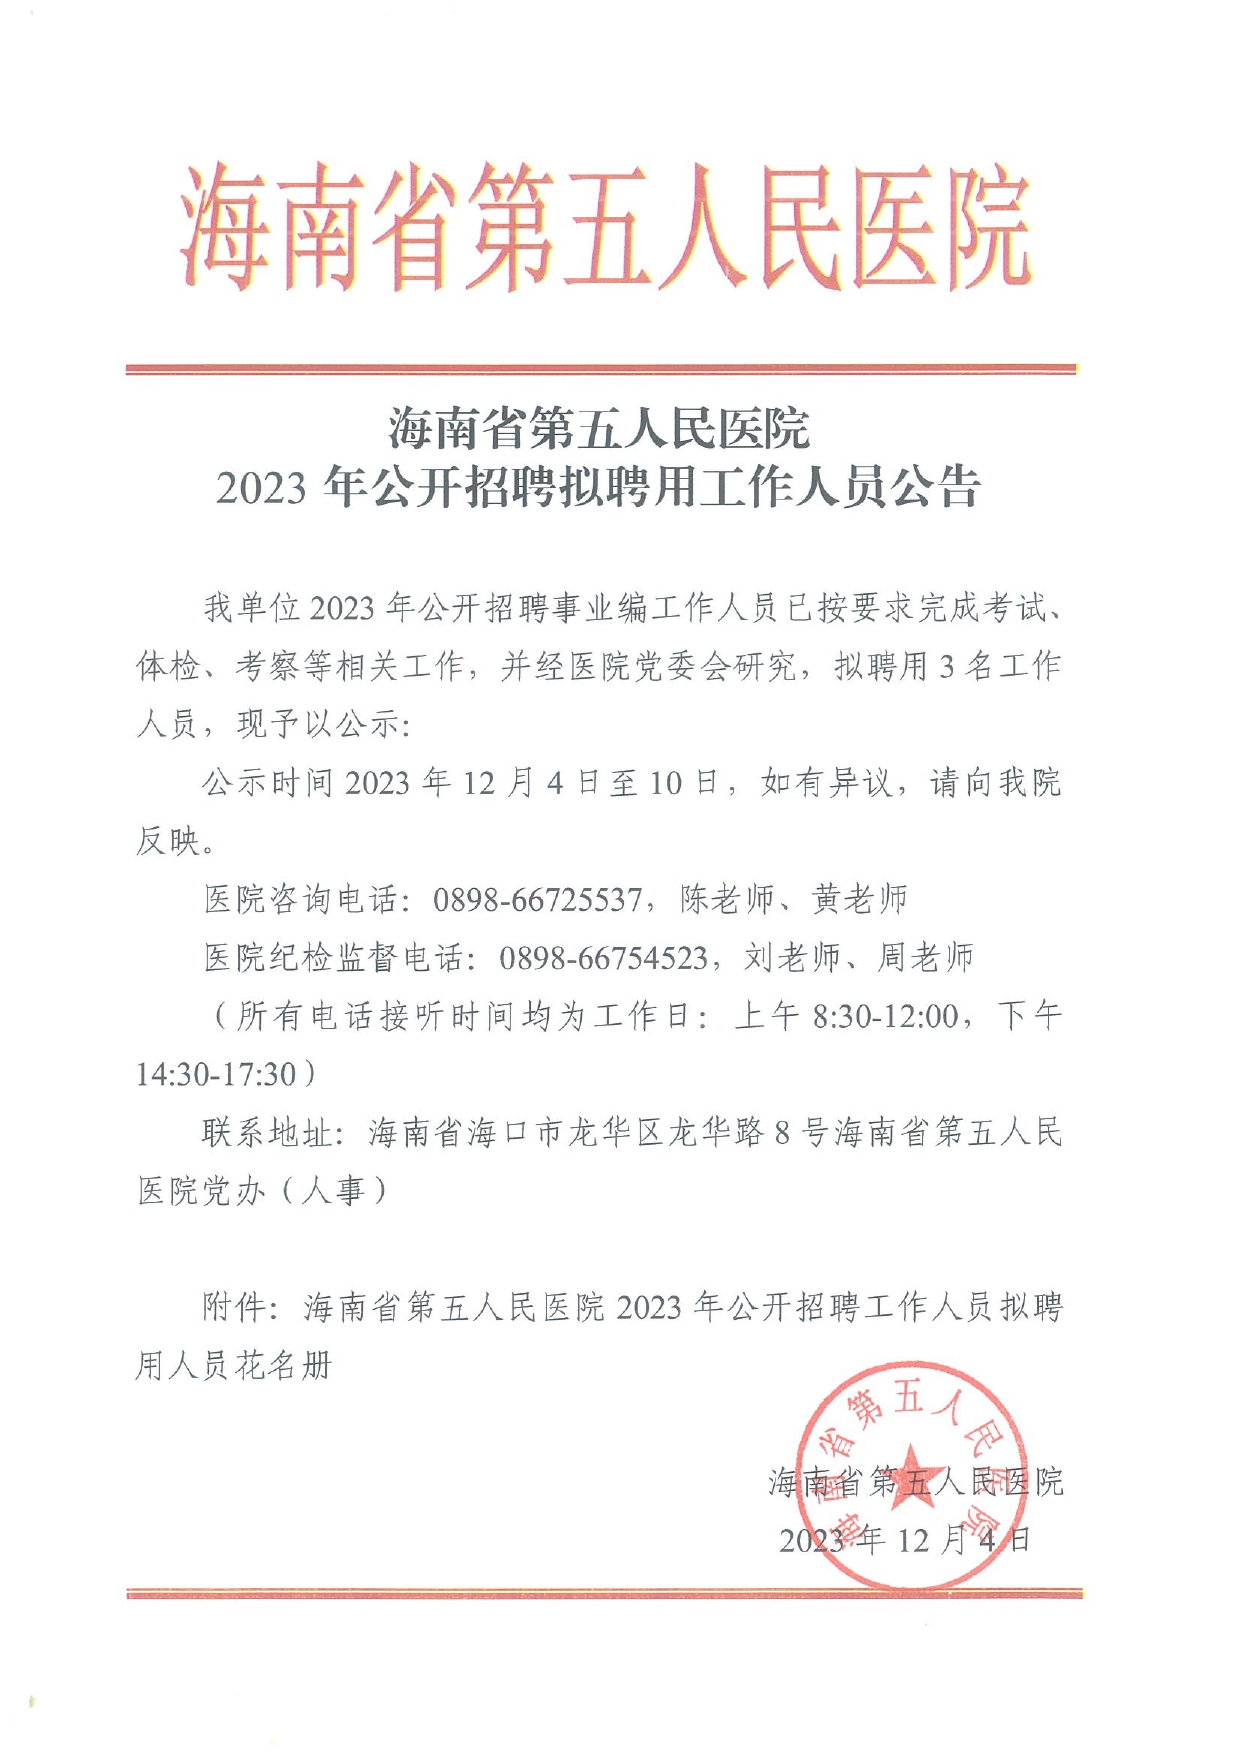 海南省第五人民医院2023年公开招聘拟聘用工作人员公告_page-0001.jpg